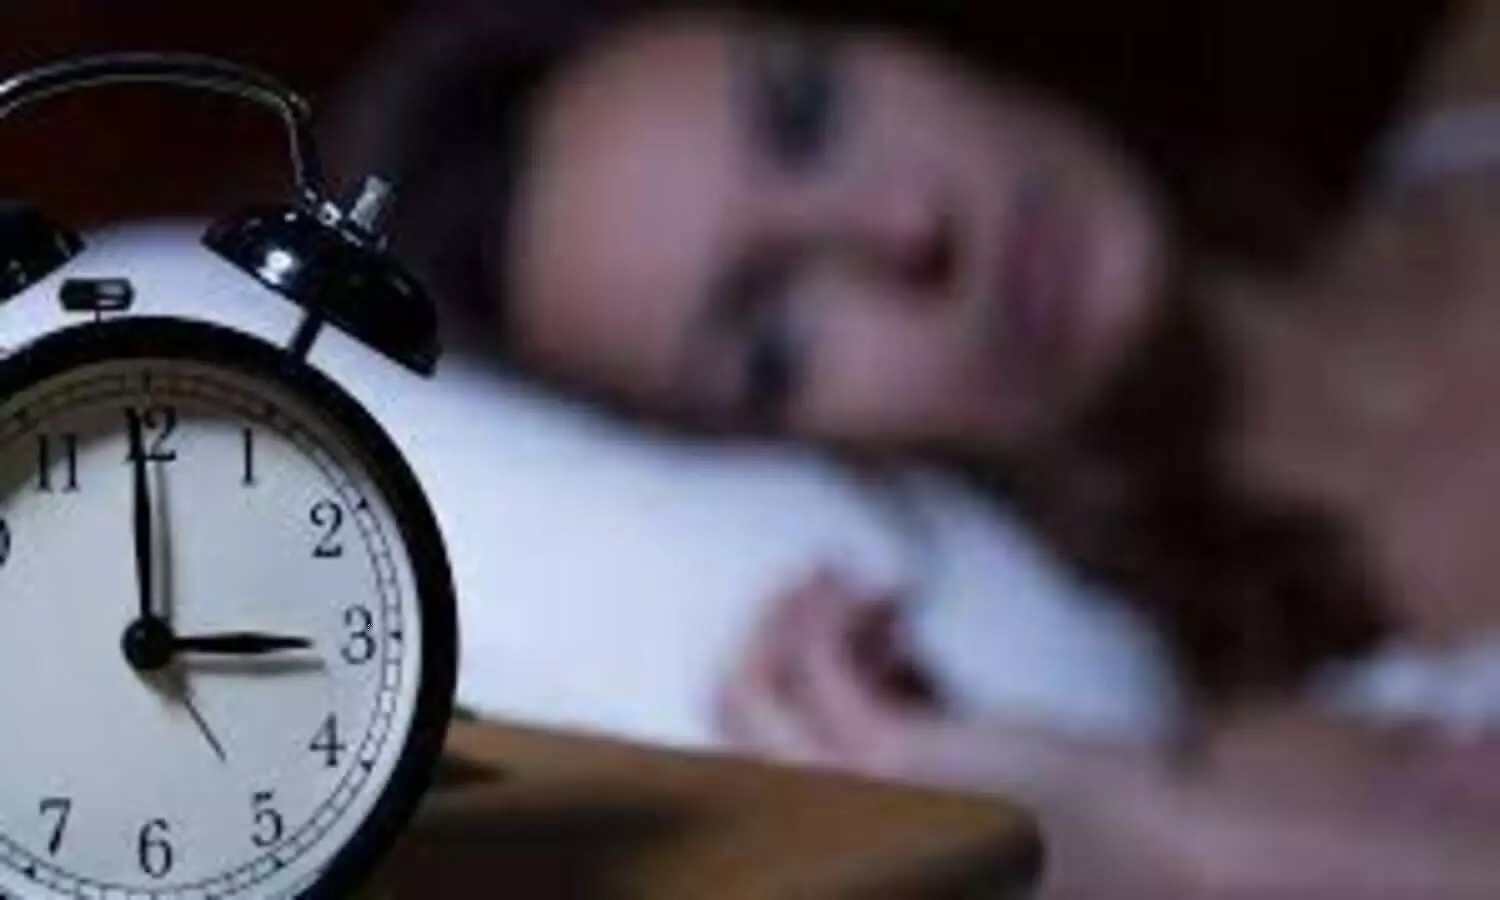 नींद ना आने से हैं परेशान, एक्सरसाइज है बेहतर उपाए, जानें कैसे